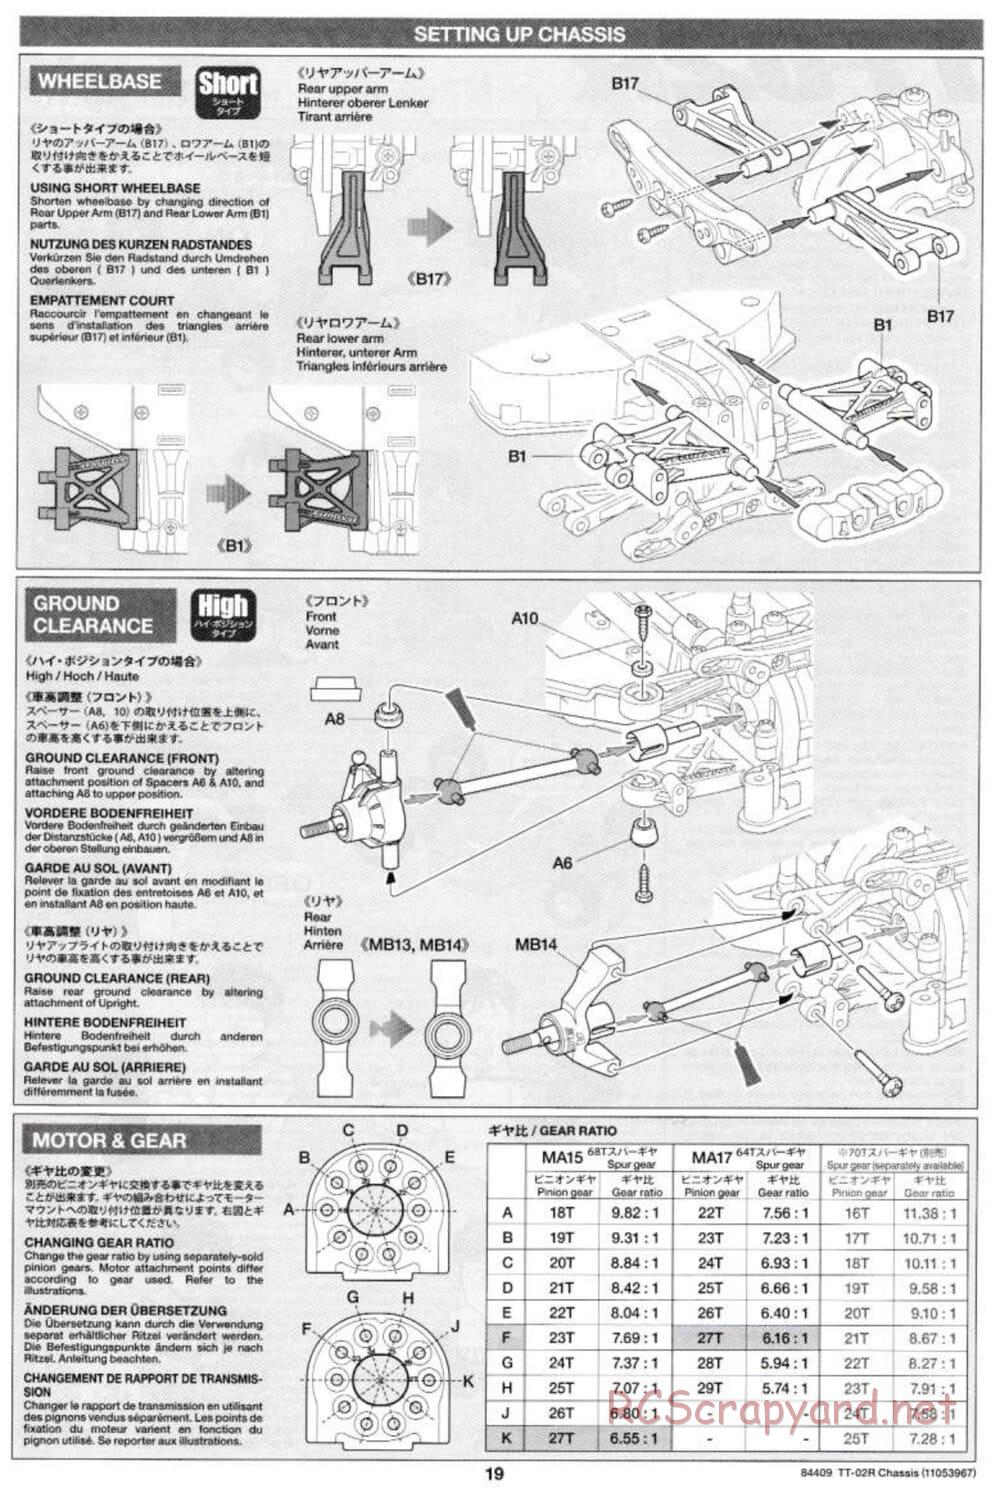 Tamiya - TT-02R Chassis - Manual - Page 19